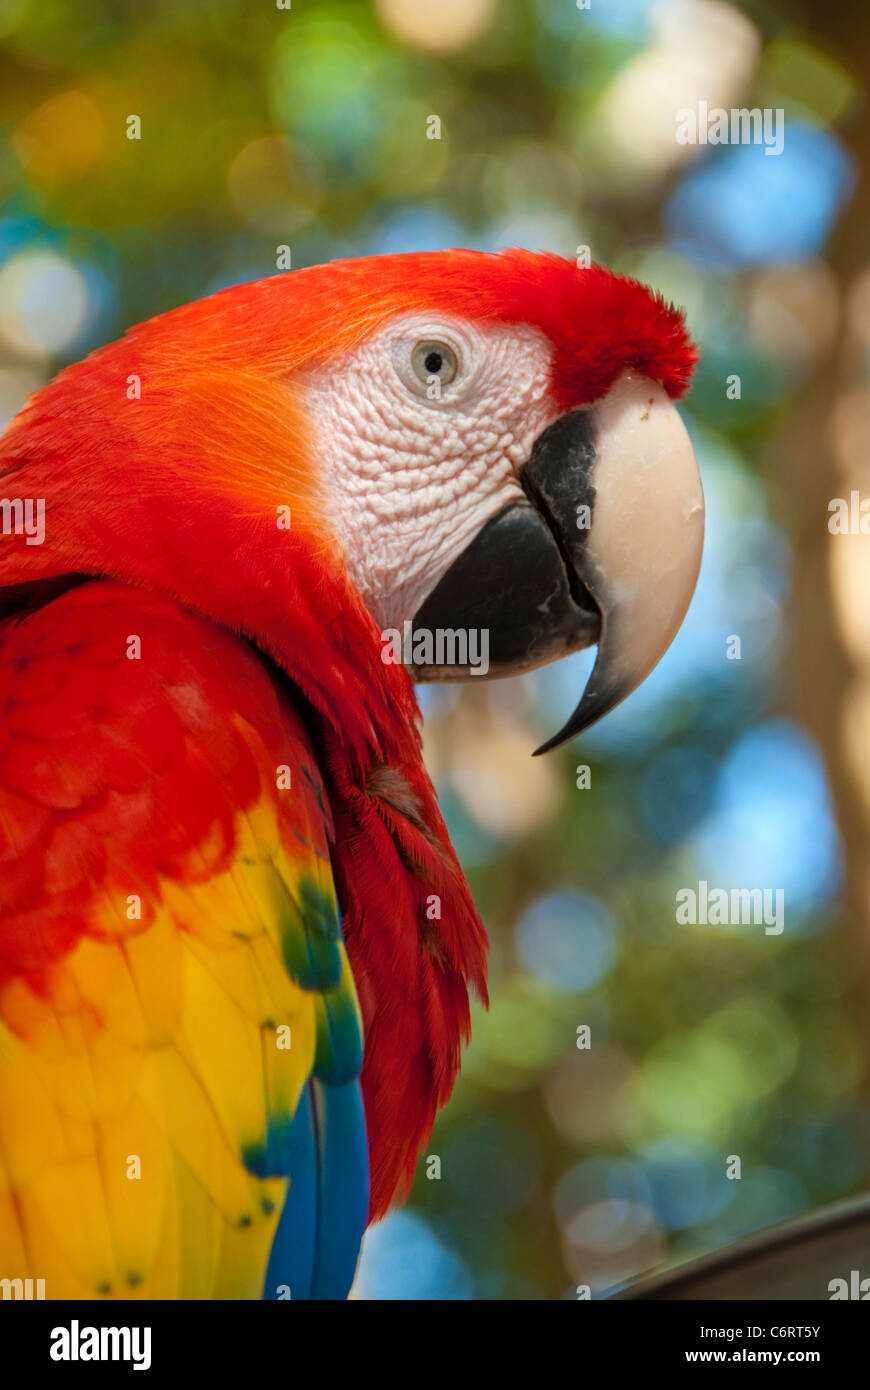 Parrot en colores rojos, azules, amarillos y verdes, fotografiada en las selvas de Honduras Foto de stock